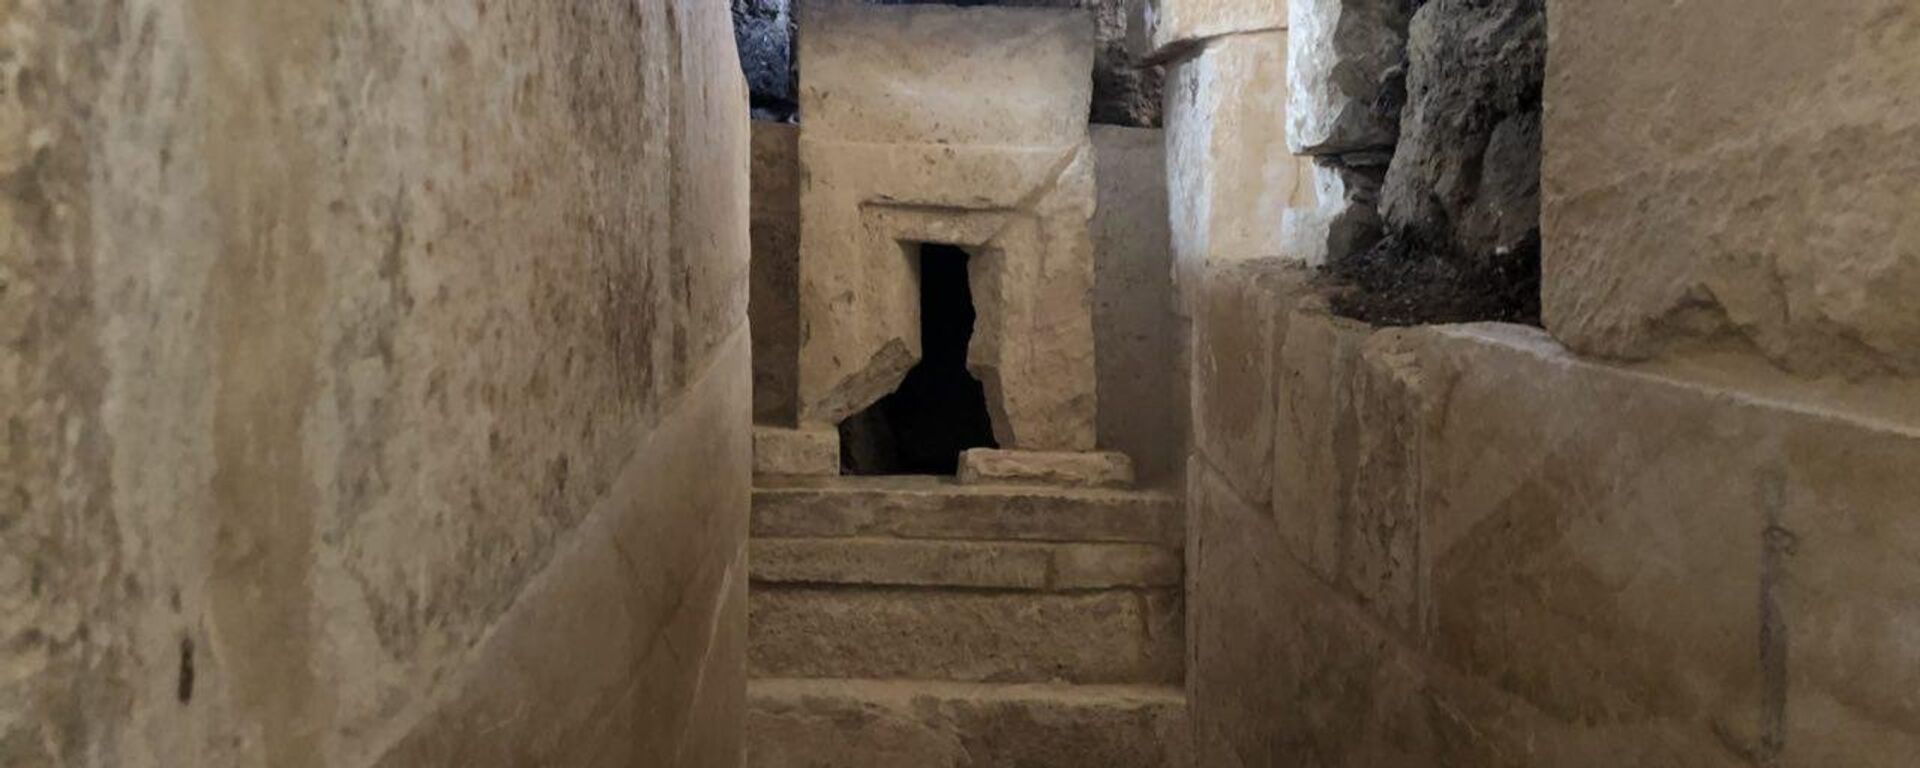 اكتشاف مقبرة أثرية لسيدة يعود تاريخها لأكثر من 4400 سنة في مصر  - سبوتنيك عربي, 1920, 28.02.2021